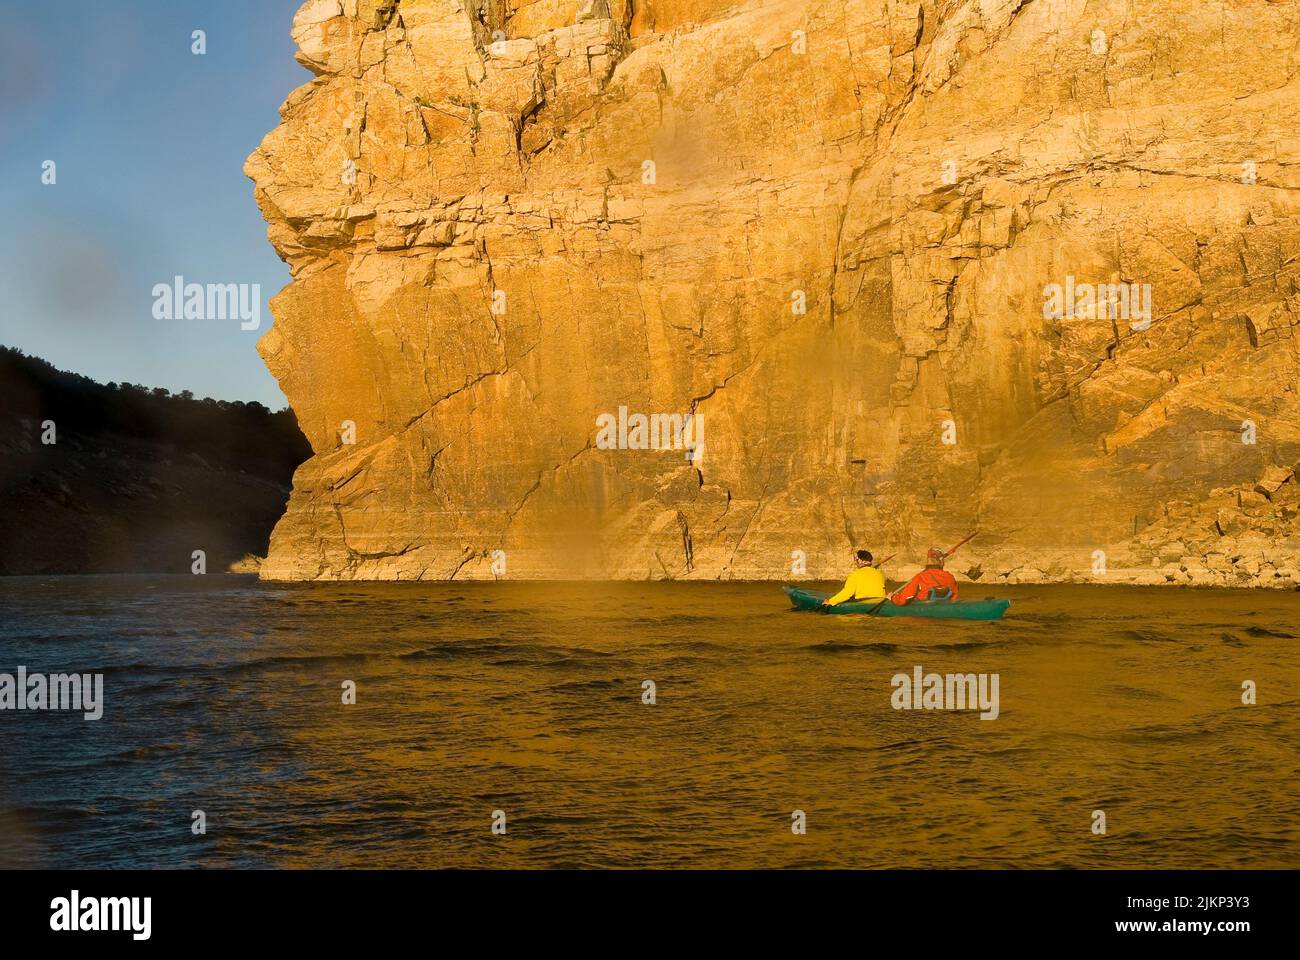 Une excursion en kayak sur le Tage dans le centre de l'Espagne Banque D'Images